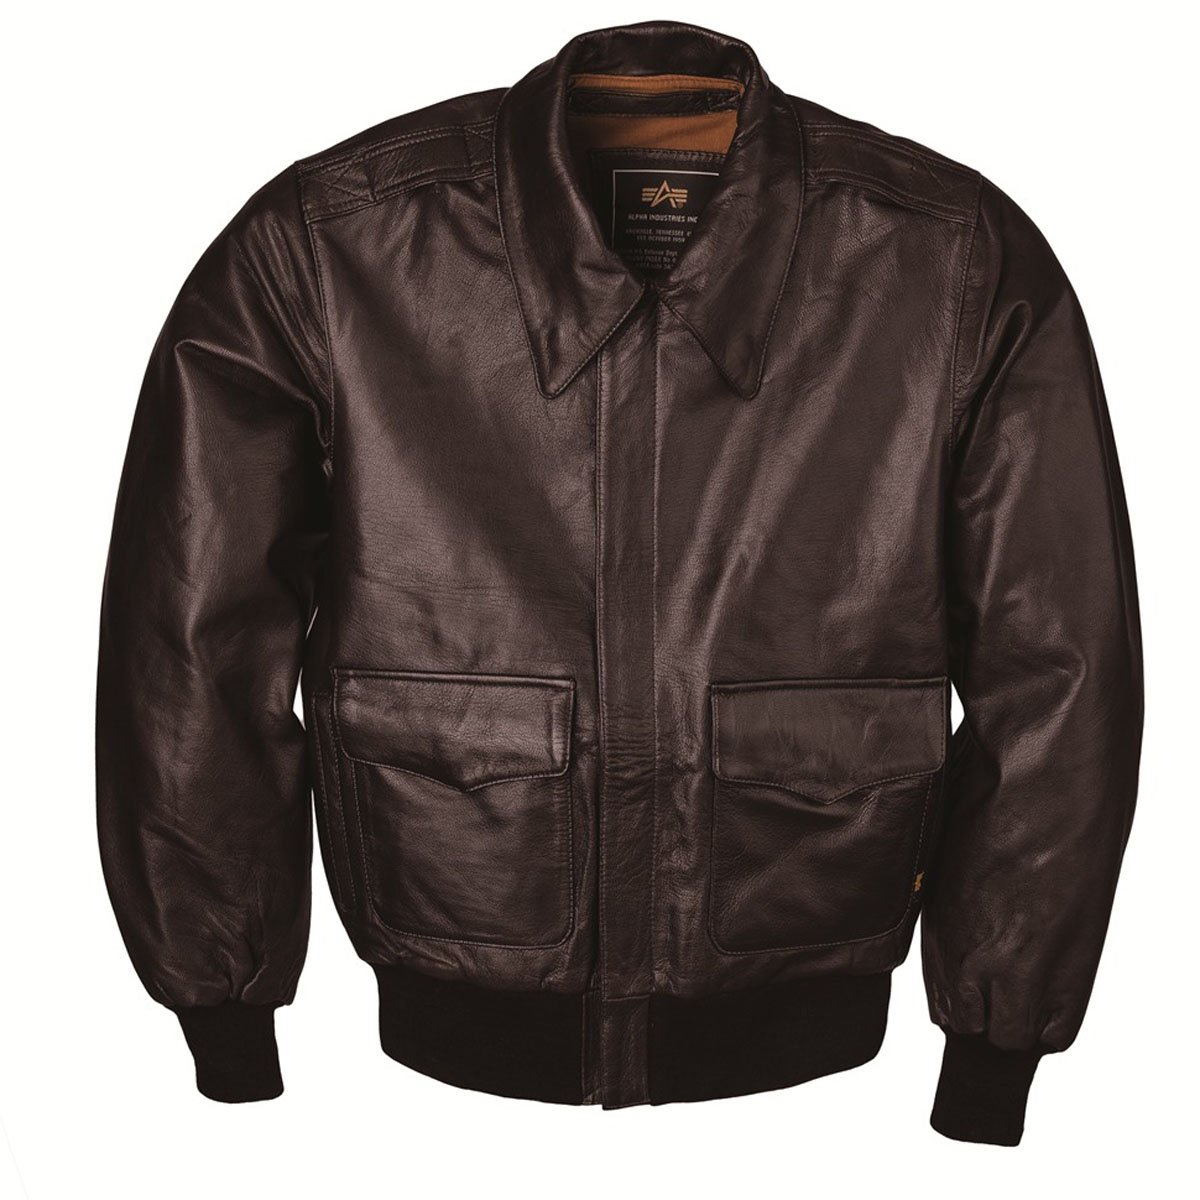 Купить мужскую кожаную куртку в нижнем новгороде. Alpha industries-2 Leather Jacket. Alpha industries CWU Leather. Куртка CWU 45p Flight Jacket Brown. Куртка пилот cuir Standard Japan a2.